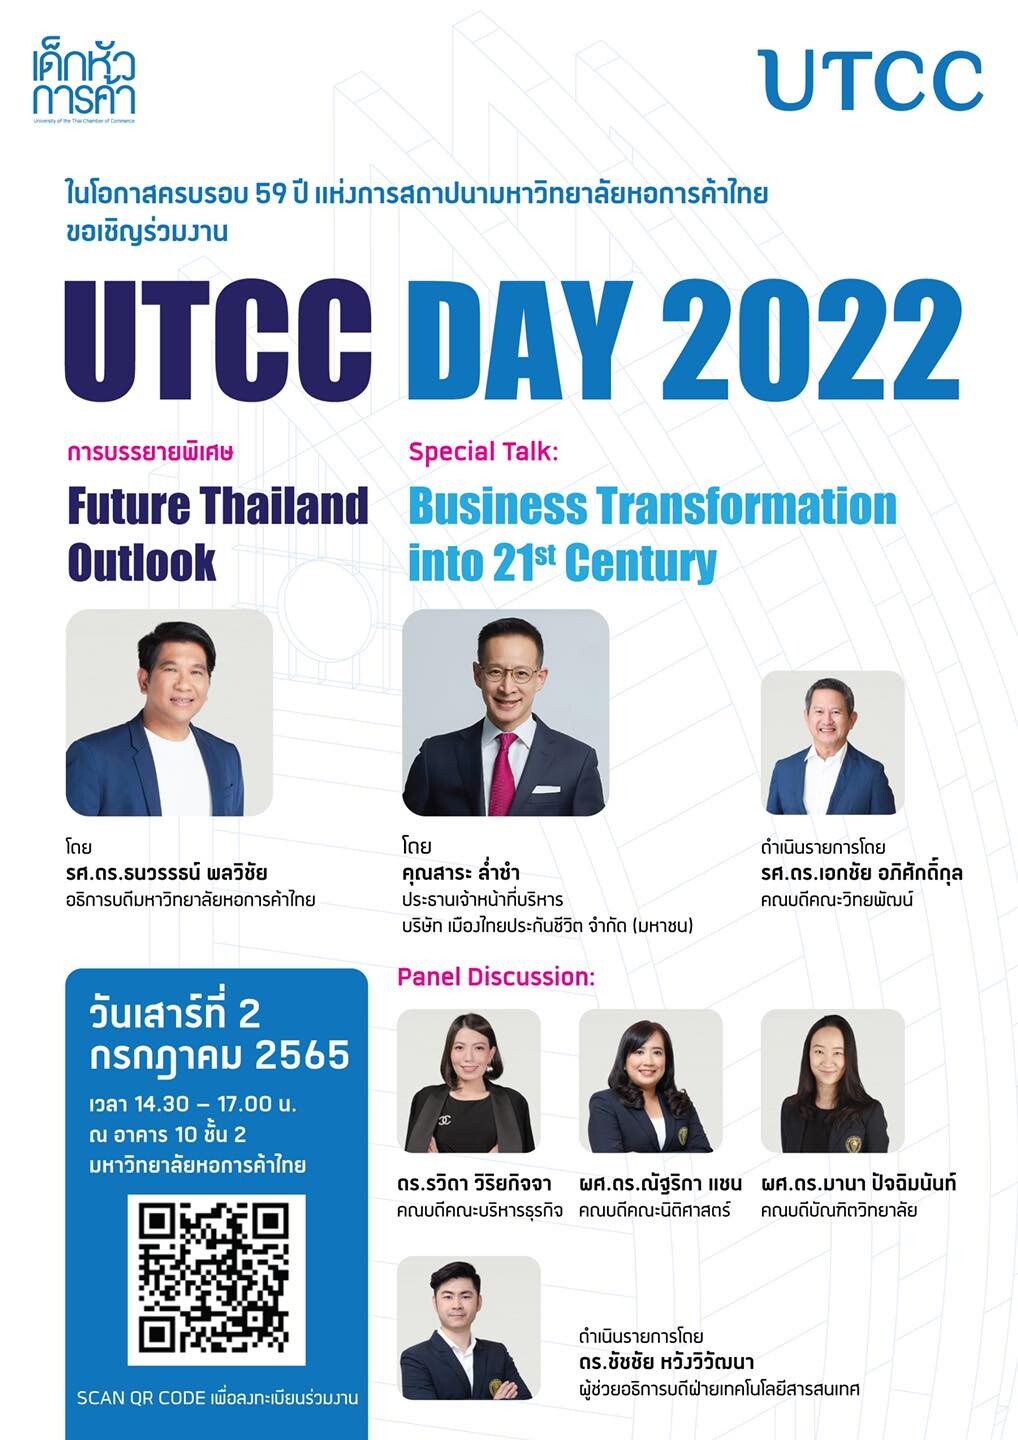 เชิญร่วมฟังบรรยายพิเศษ ในโอกาส ครบรอบ 59 ปี ม.หอการค้าไทย "UTCC DAY 2022 "